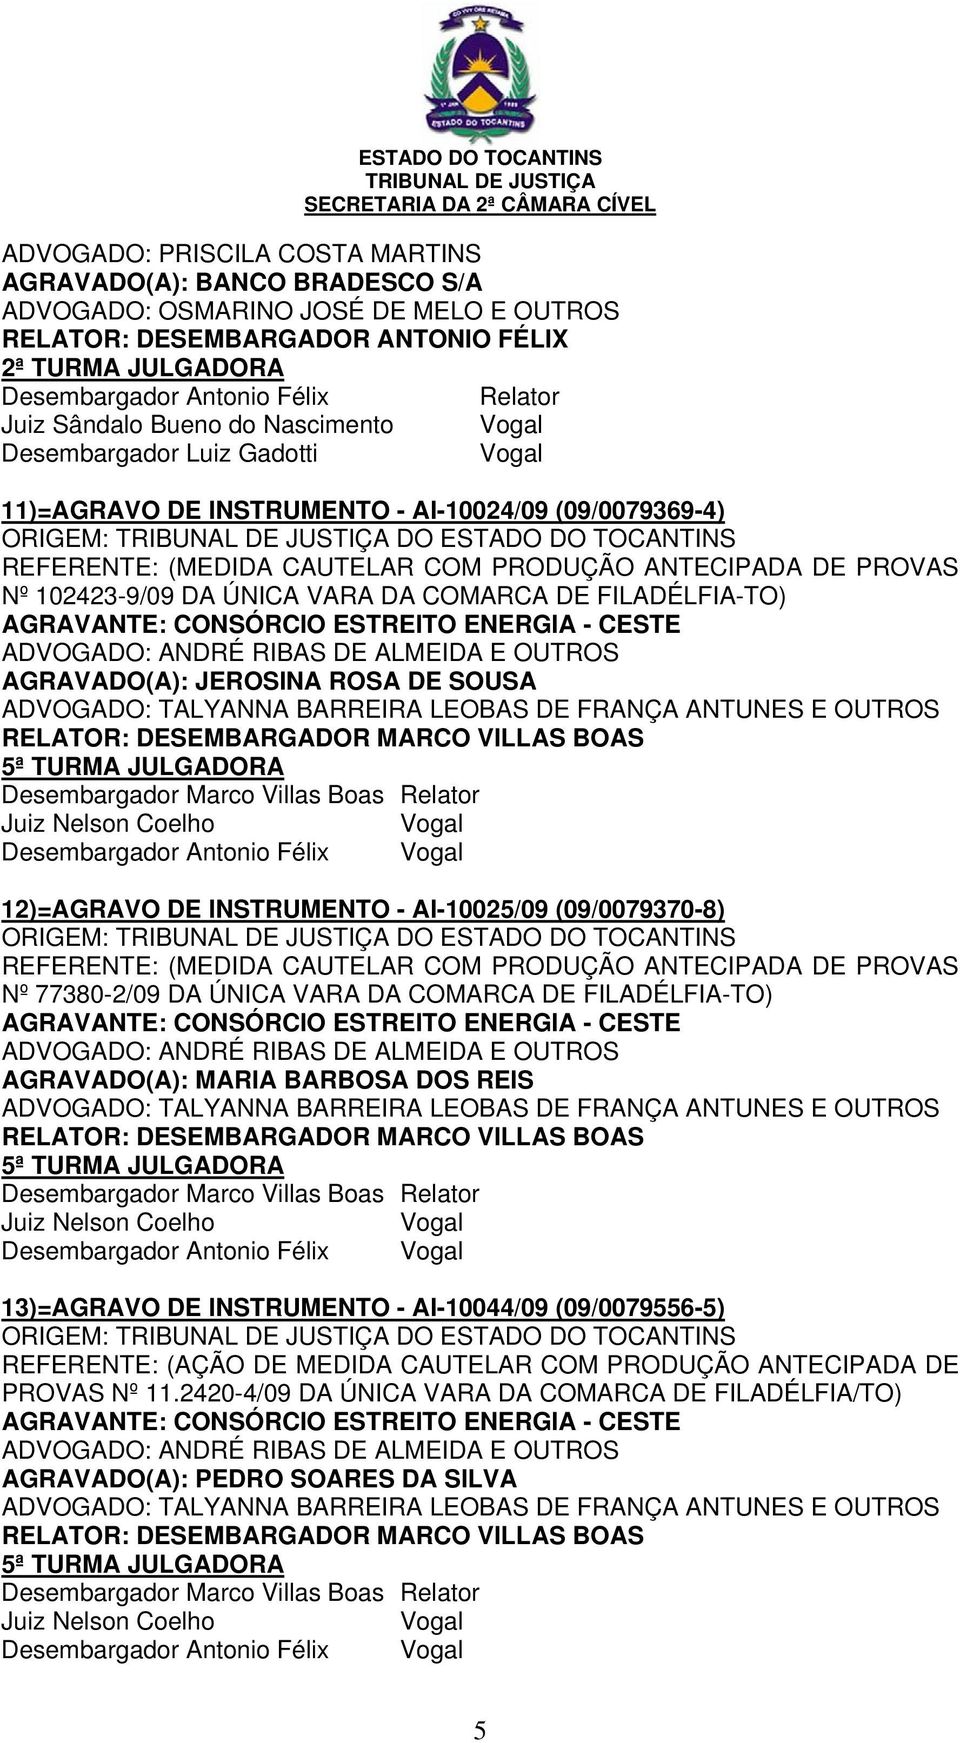 FILADÉLFIA-TO) AGRAVADO(A): JEROSINA ROSA DE SOUSA Desembargador Antonio Félix 12)=AGRAVO DE INSTRUMENTO - AI-10025/09 (09/0079370-8) REFERENTE: (MEDIDA CAUTELAR COM PRODUÇÃO ANTECIPADA DE PROVAS Nº